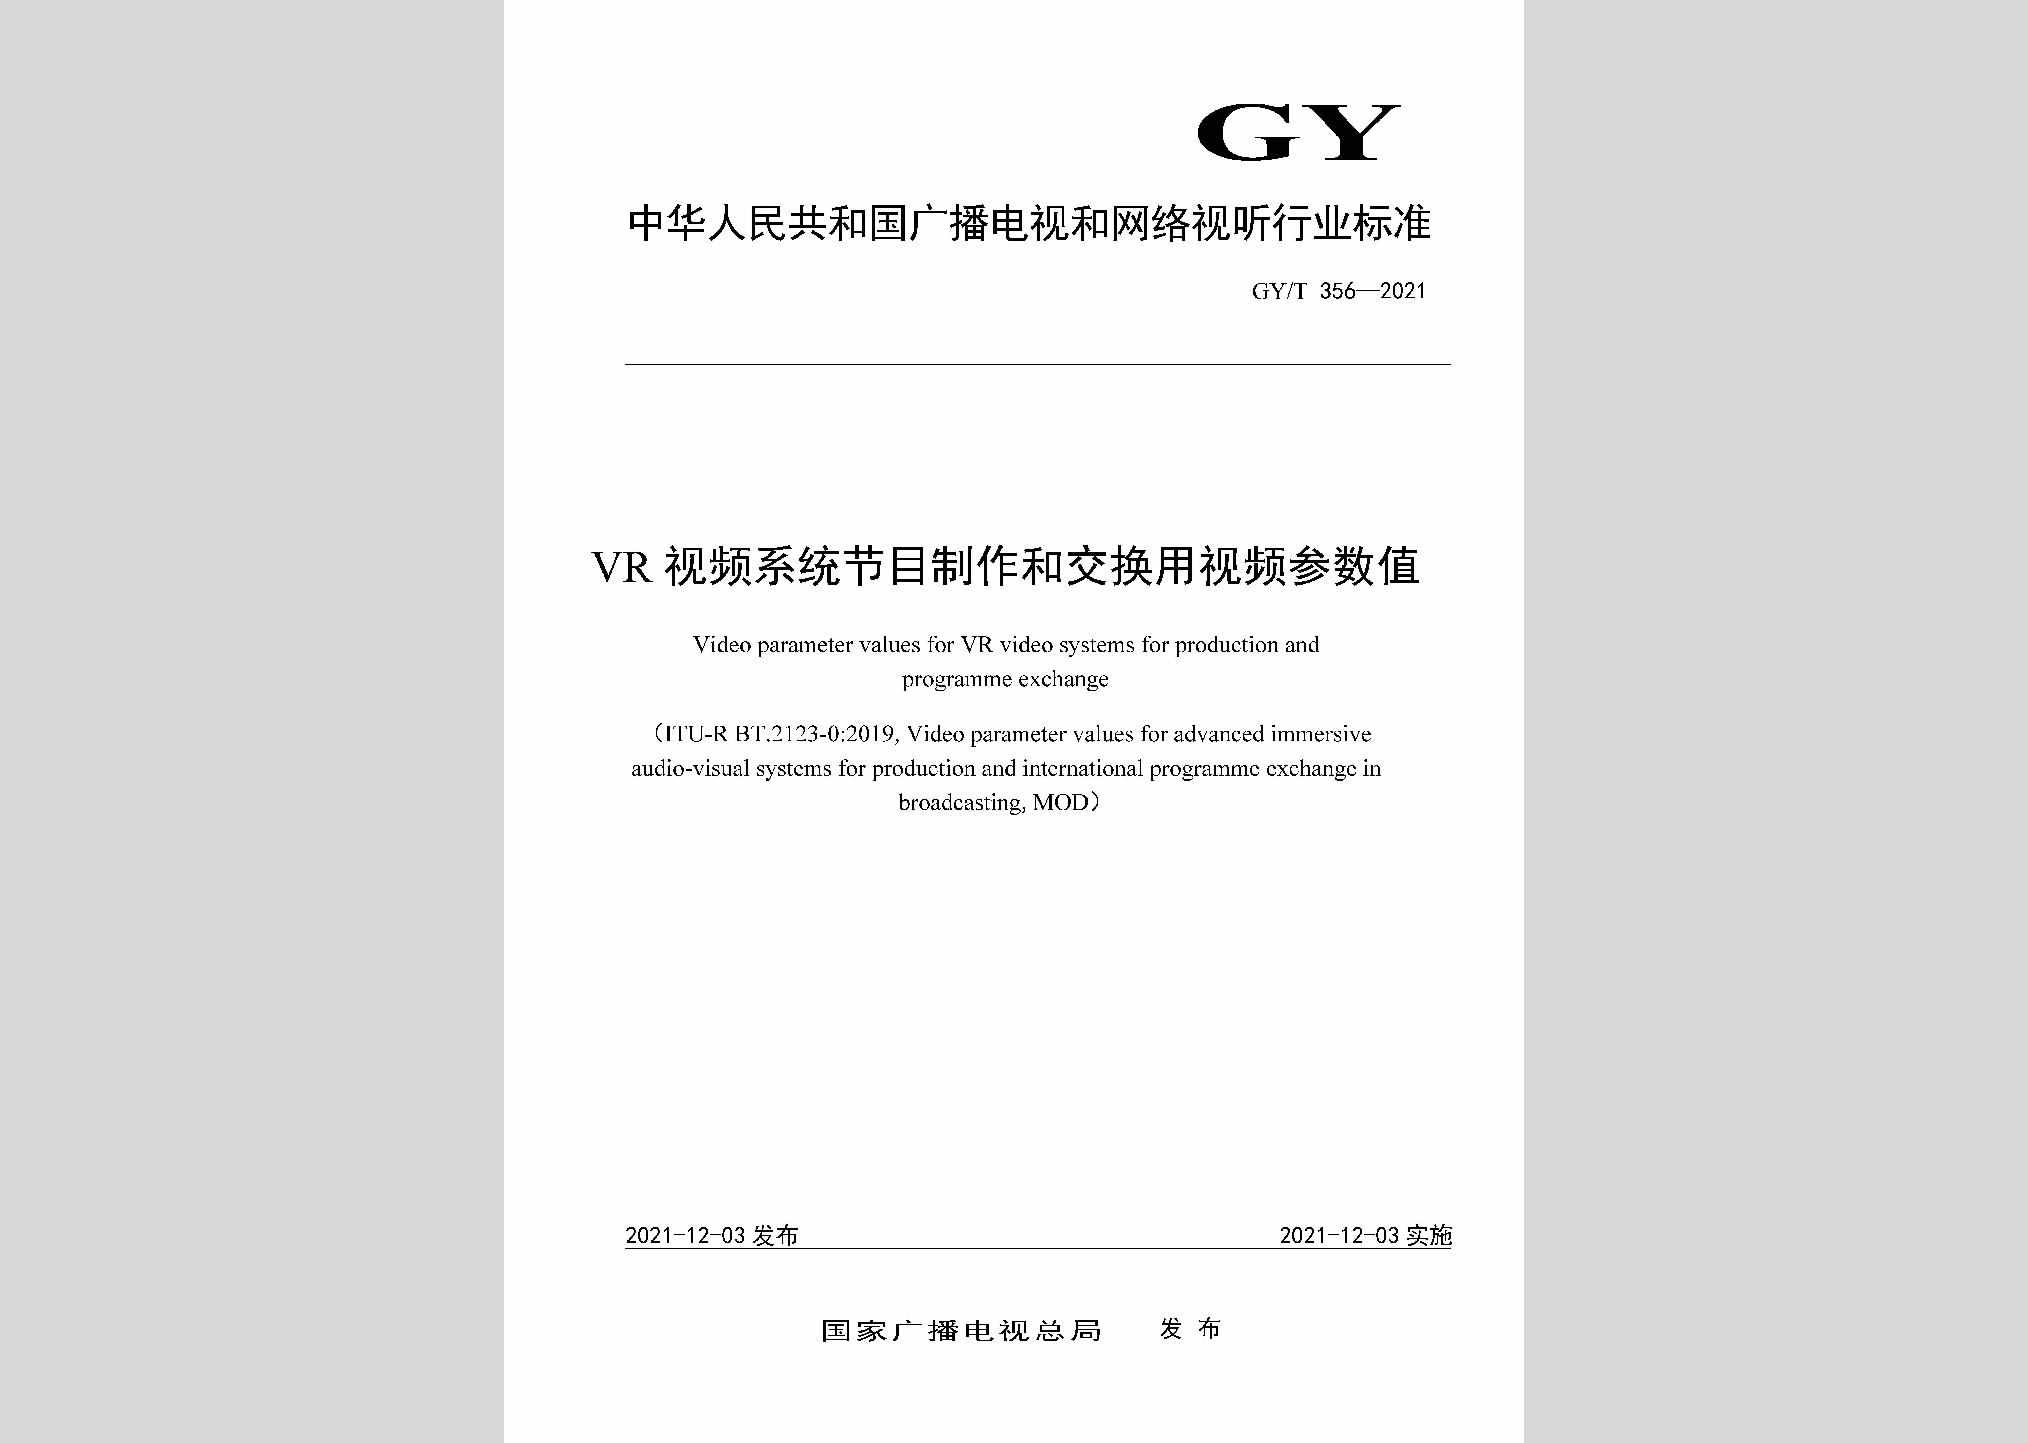 GY/T356-2021：VR视频系统节目制作和交换用视频参数值